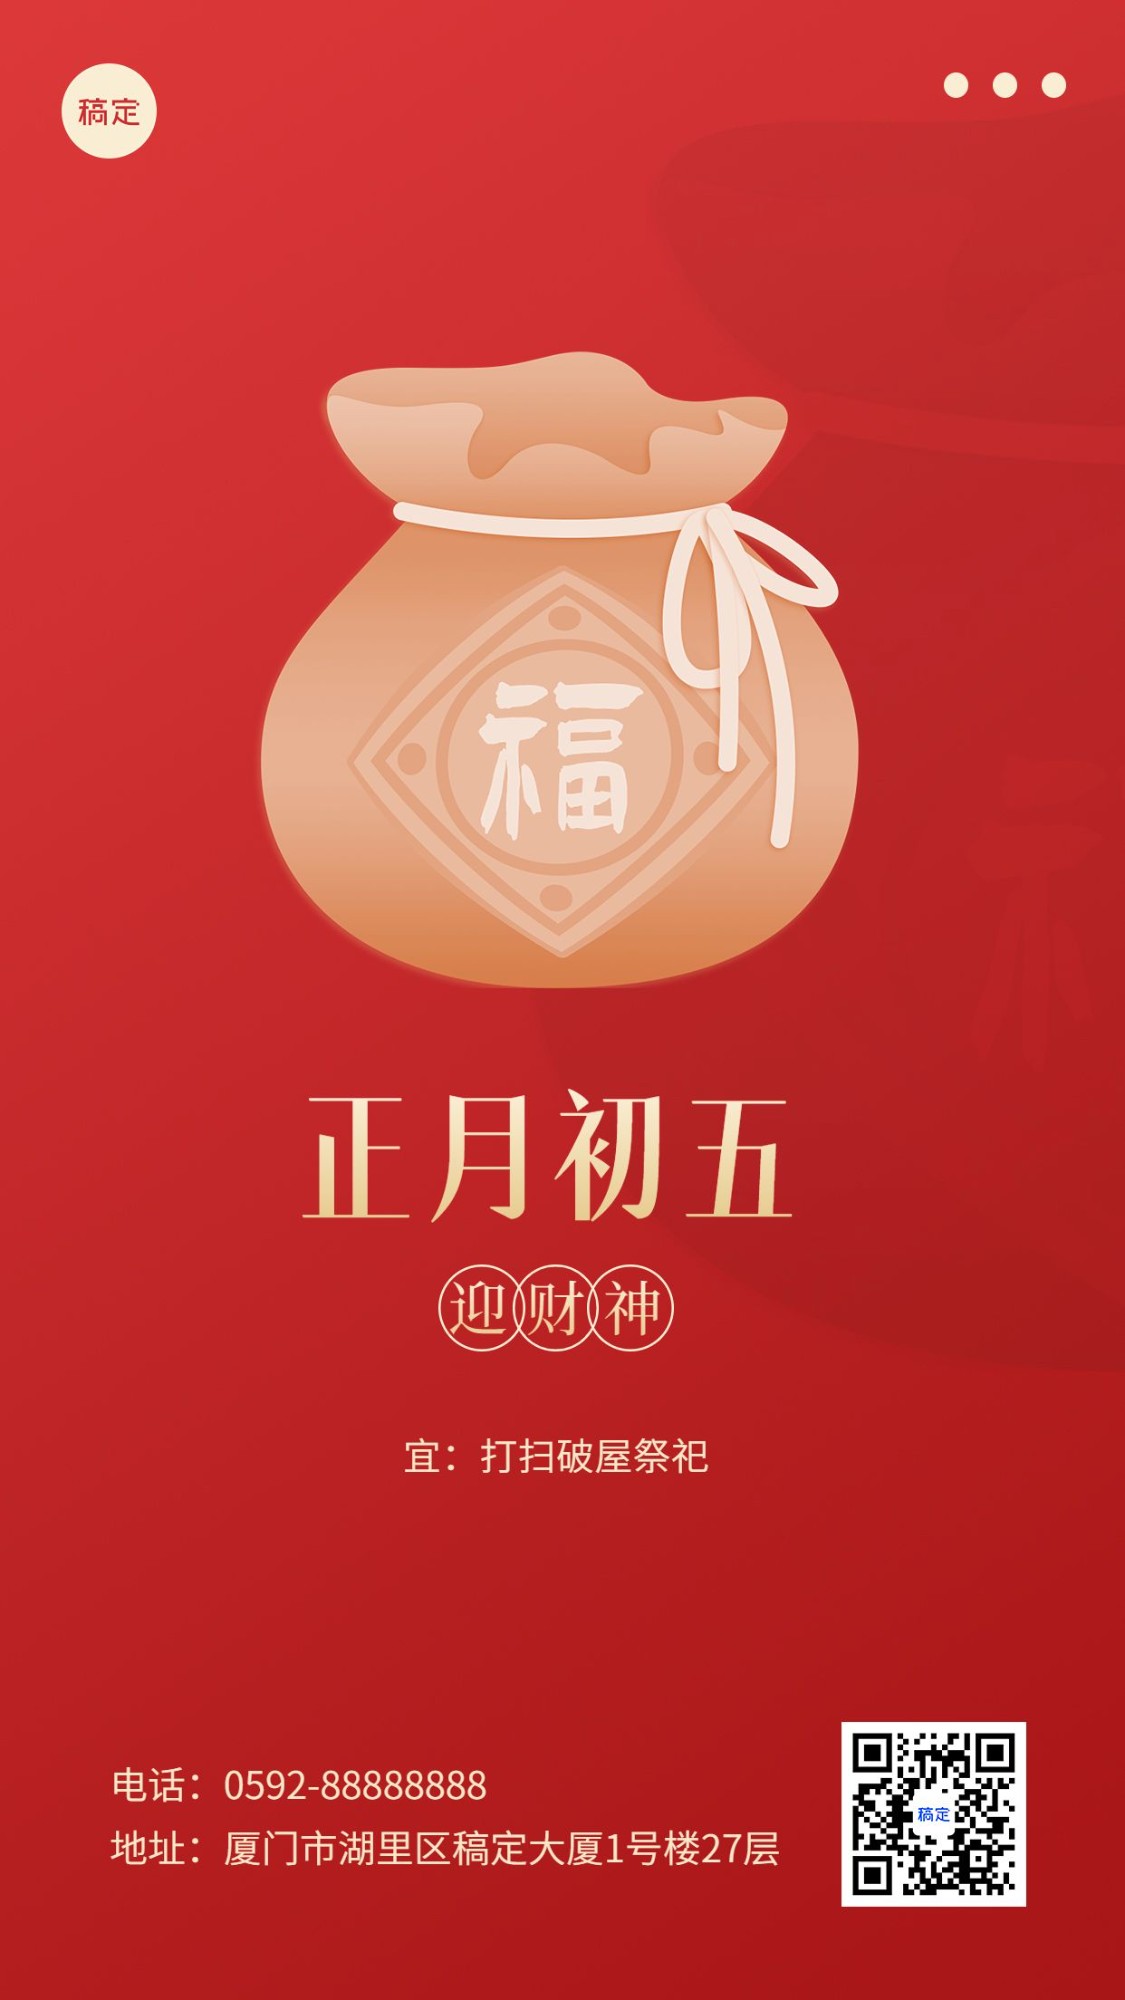 春节新年祝福正月初五简约排版套系手机海报预览效果